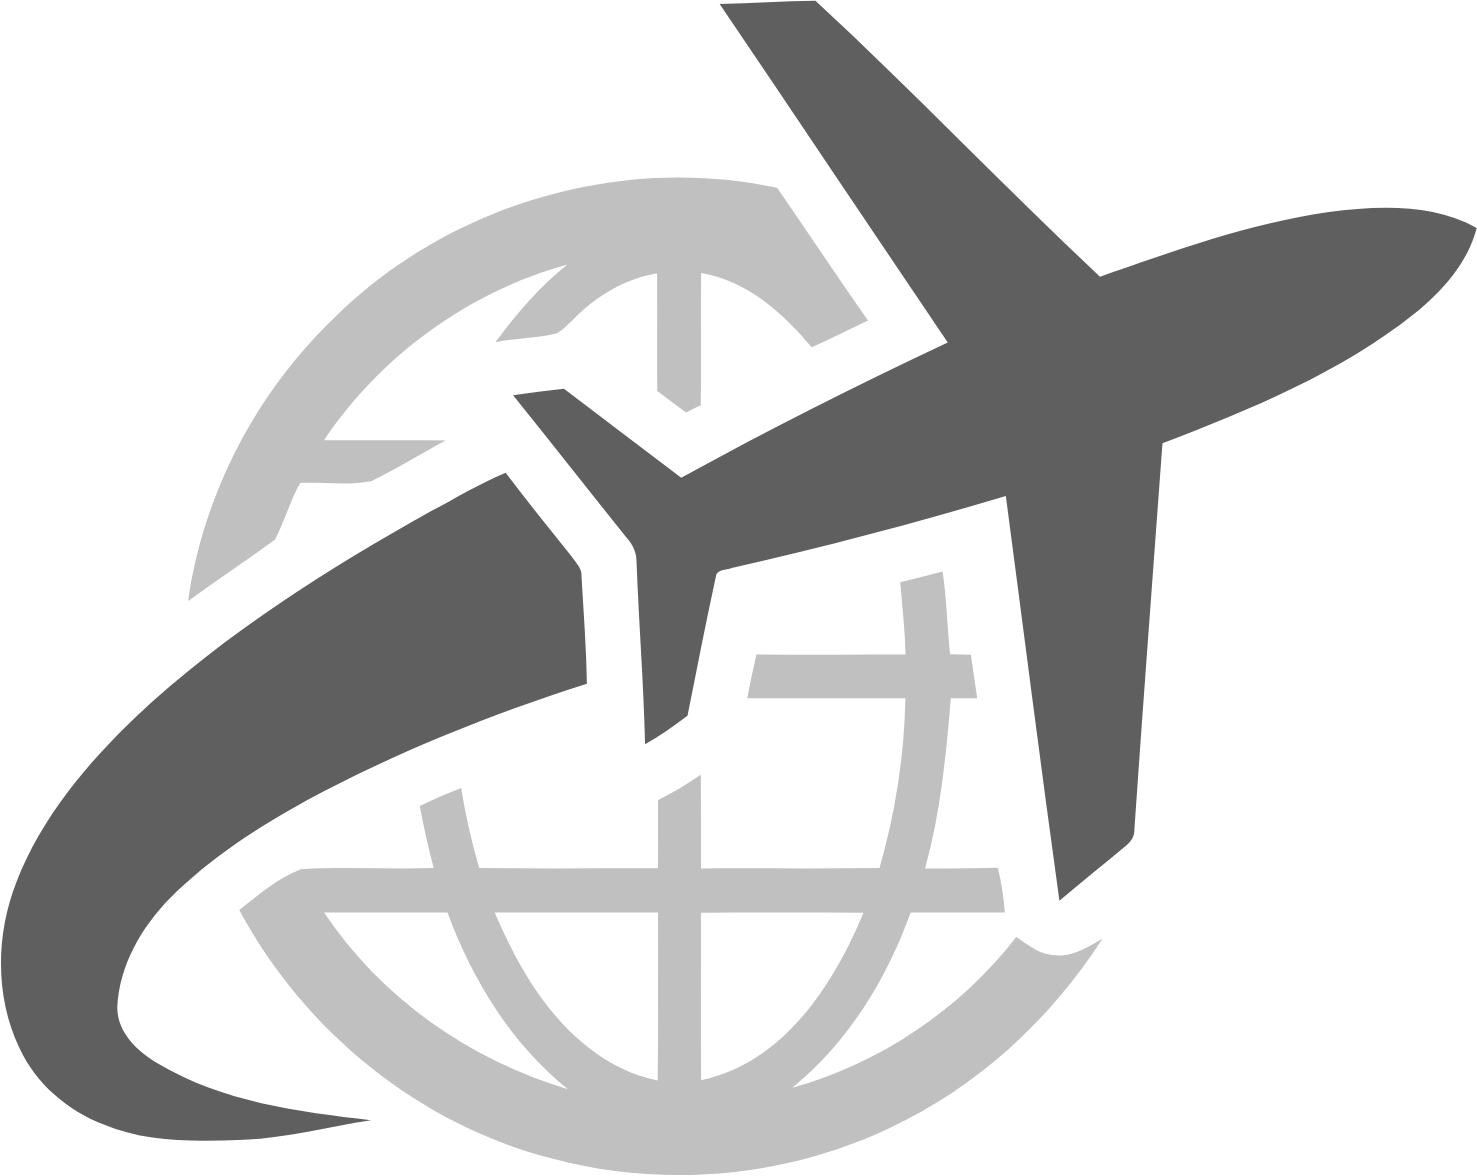 US Global Jets ETF logo (PNG transparent)